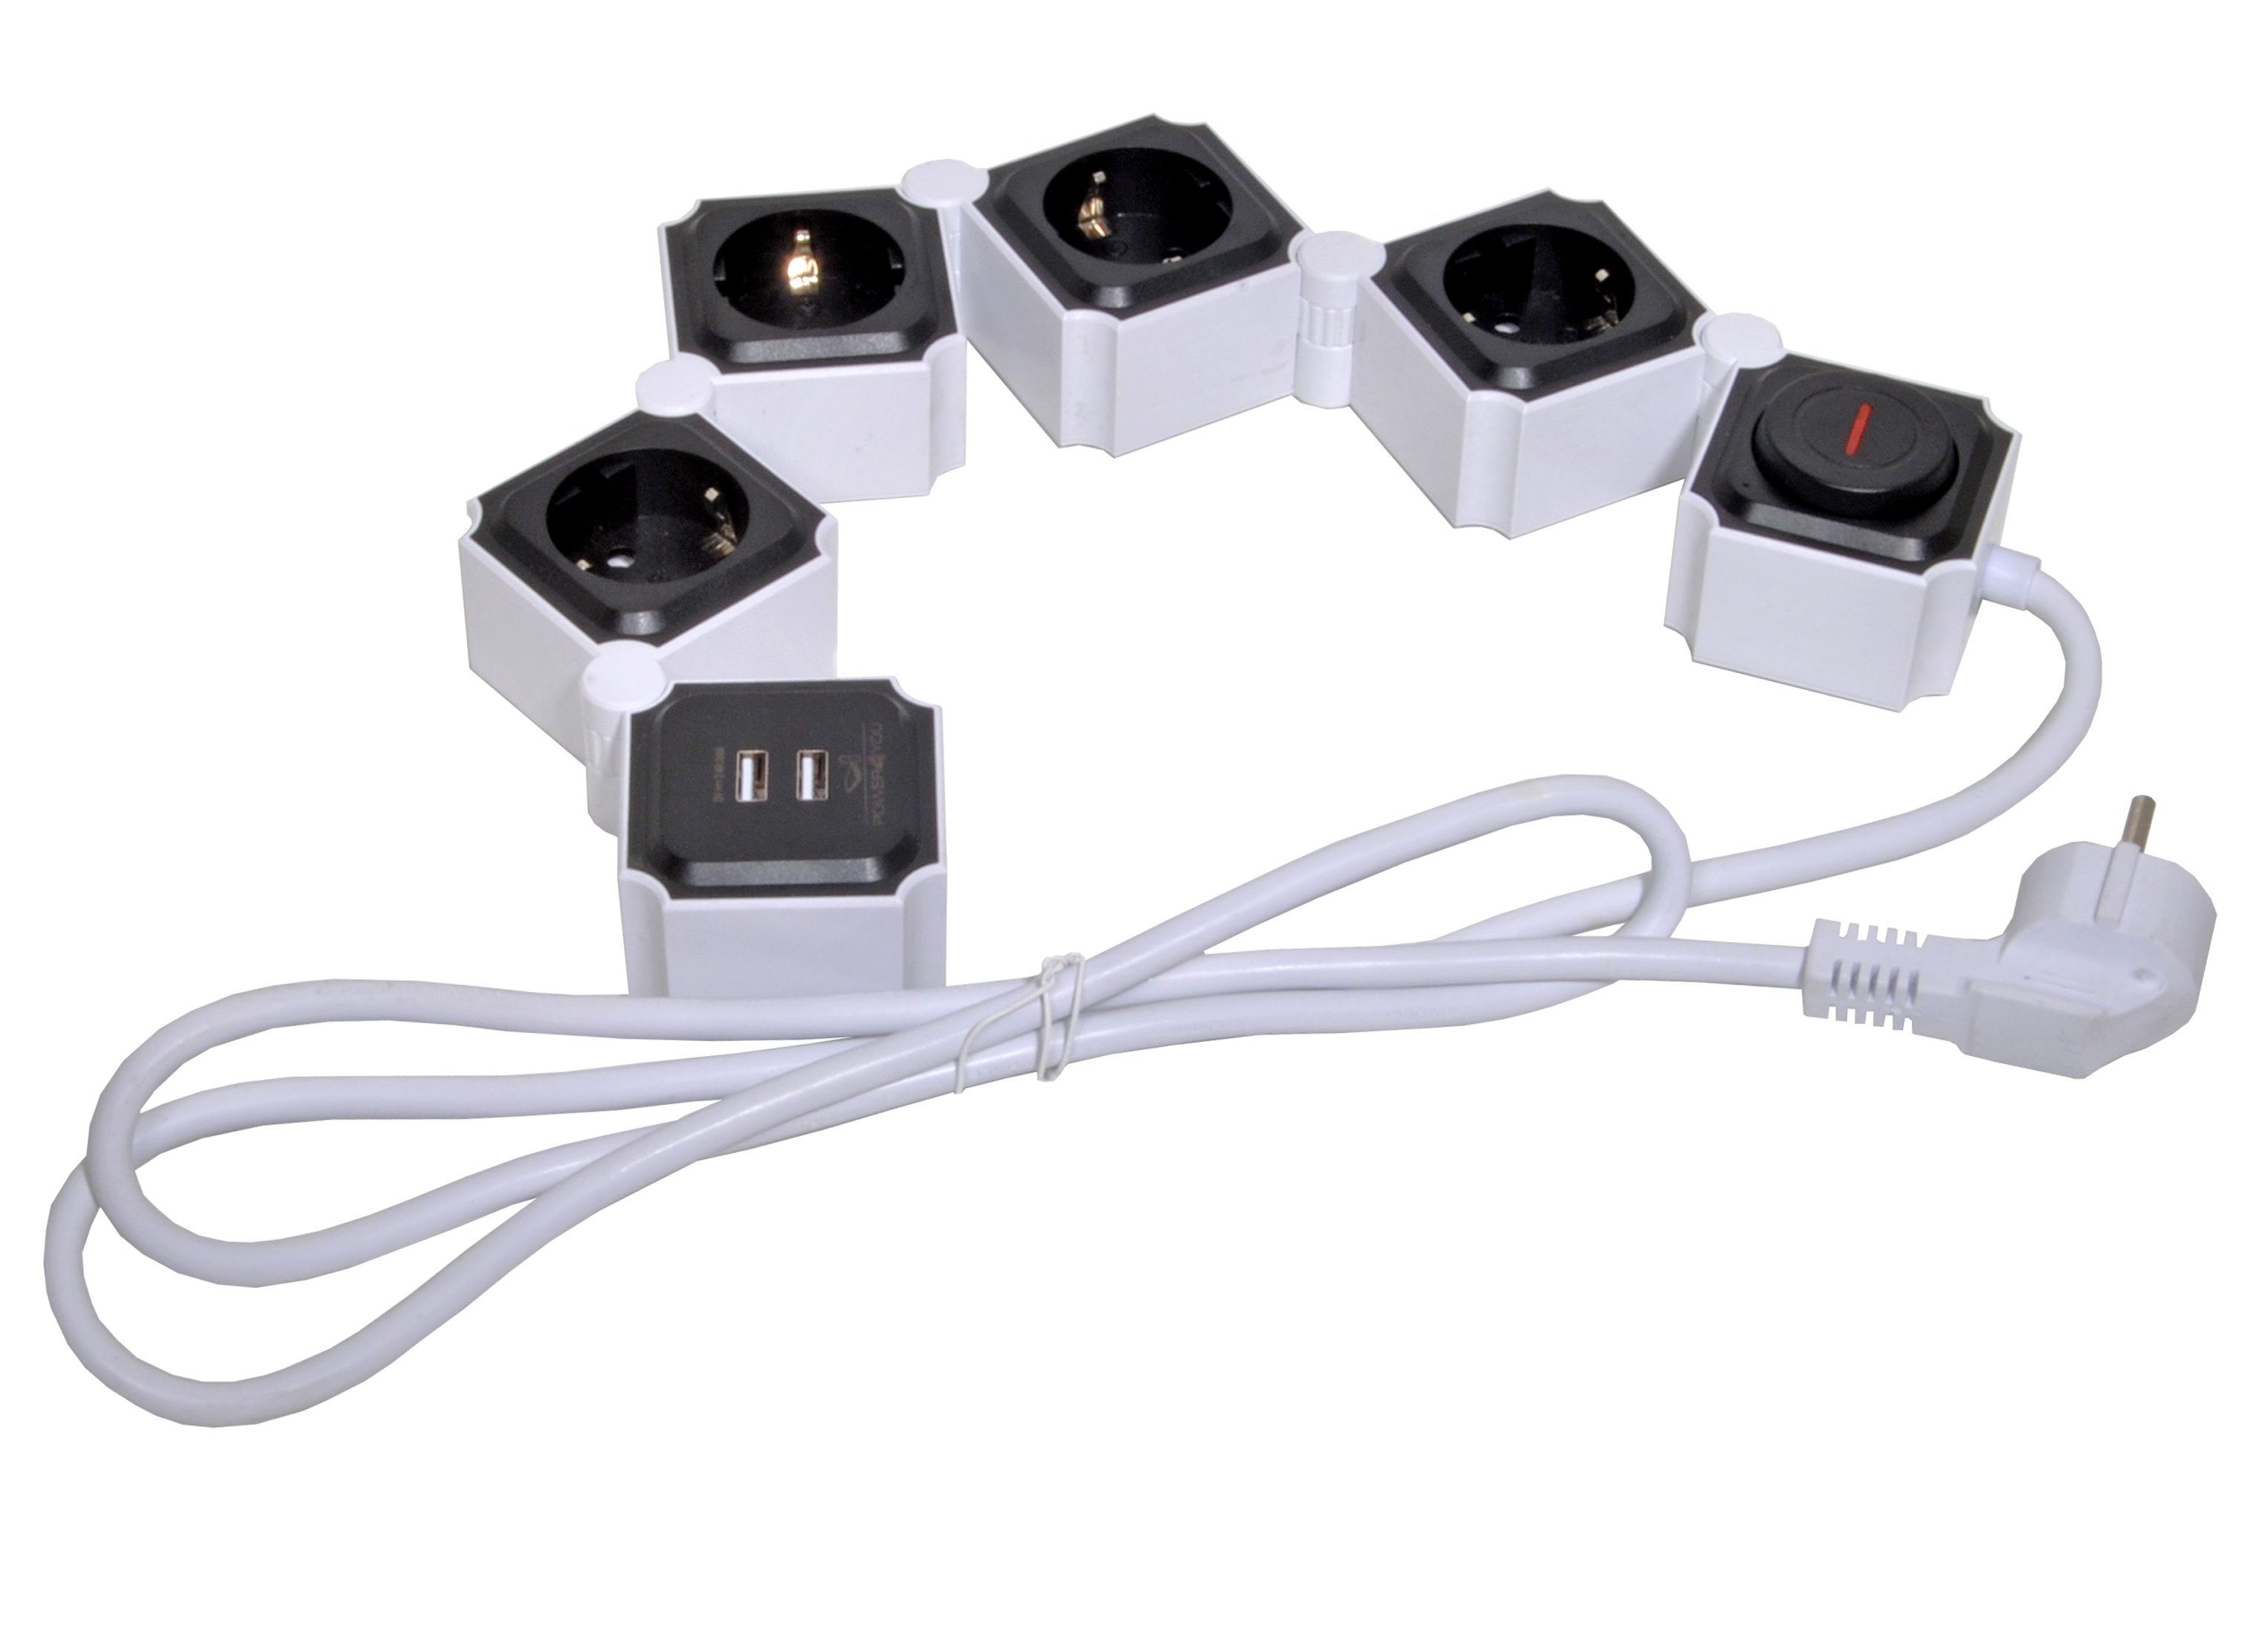 Schwaiger 4-fach Steckdosenleiste 2 x USB (4,2A) Schalter Mehrfachstecker Mehrfachsteckdose (Ein- / Ausschalter, USB-Anschlüsse, Schalterbeleuchtung, separate Ein- / Ausschalter, Flexible Einsatz, 1,5M kabel), inkl. 2 x USB 12w